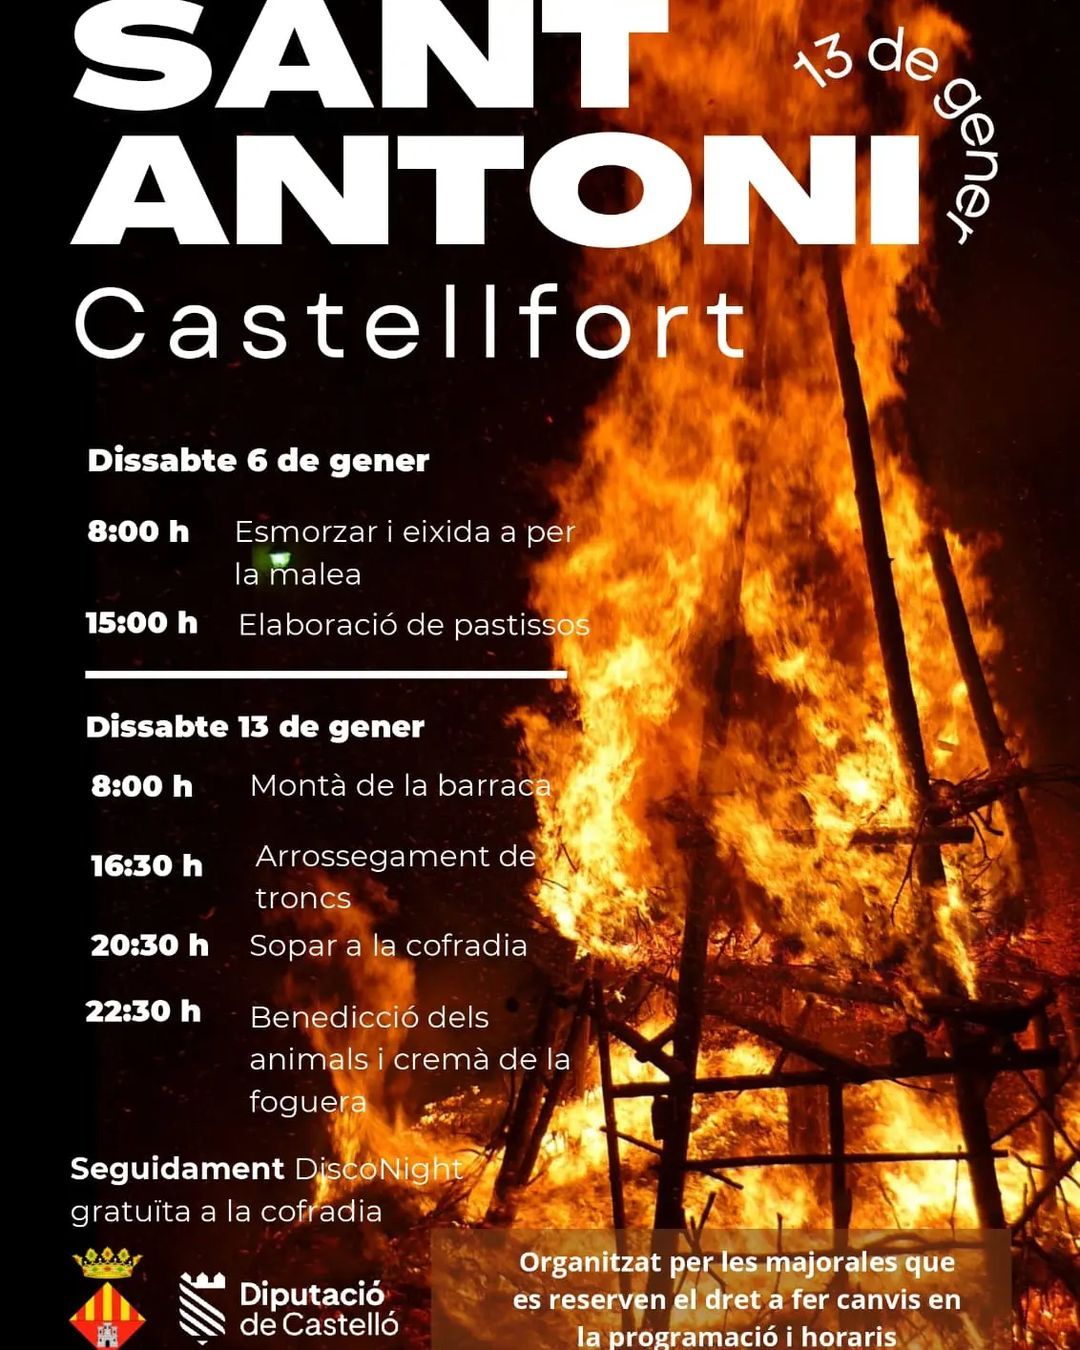 Castellfort se adentra en Sant Antoni con la leña y los pasteles